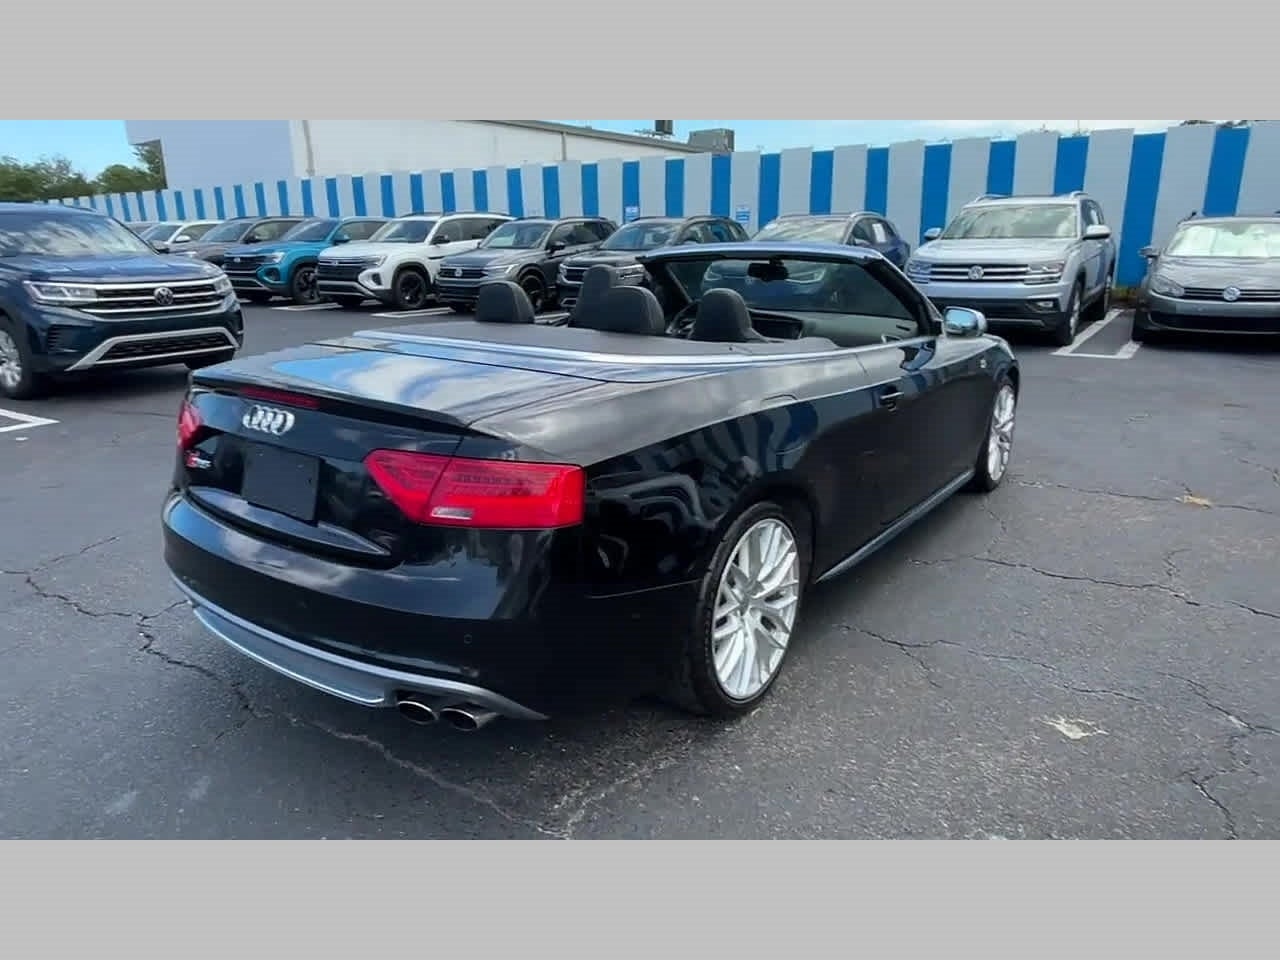 2015 Audi S5 Prestige